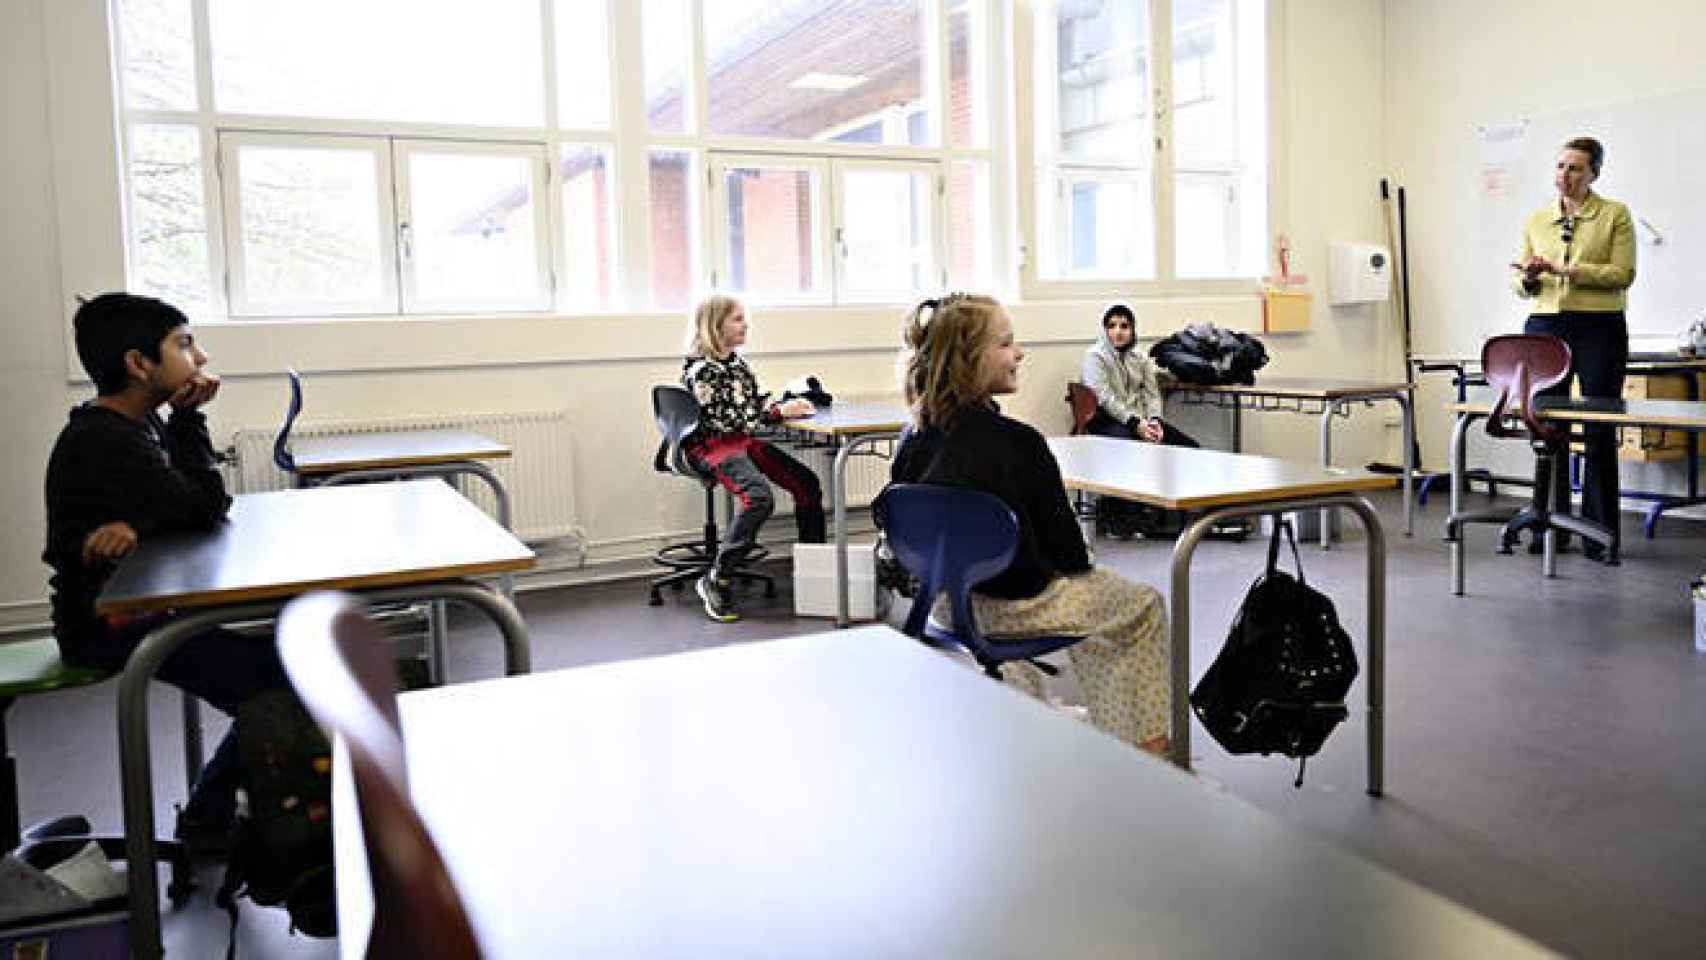 FOTO: Imagen de una clase reducida en Dinamarca.